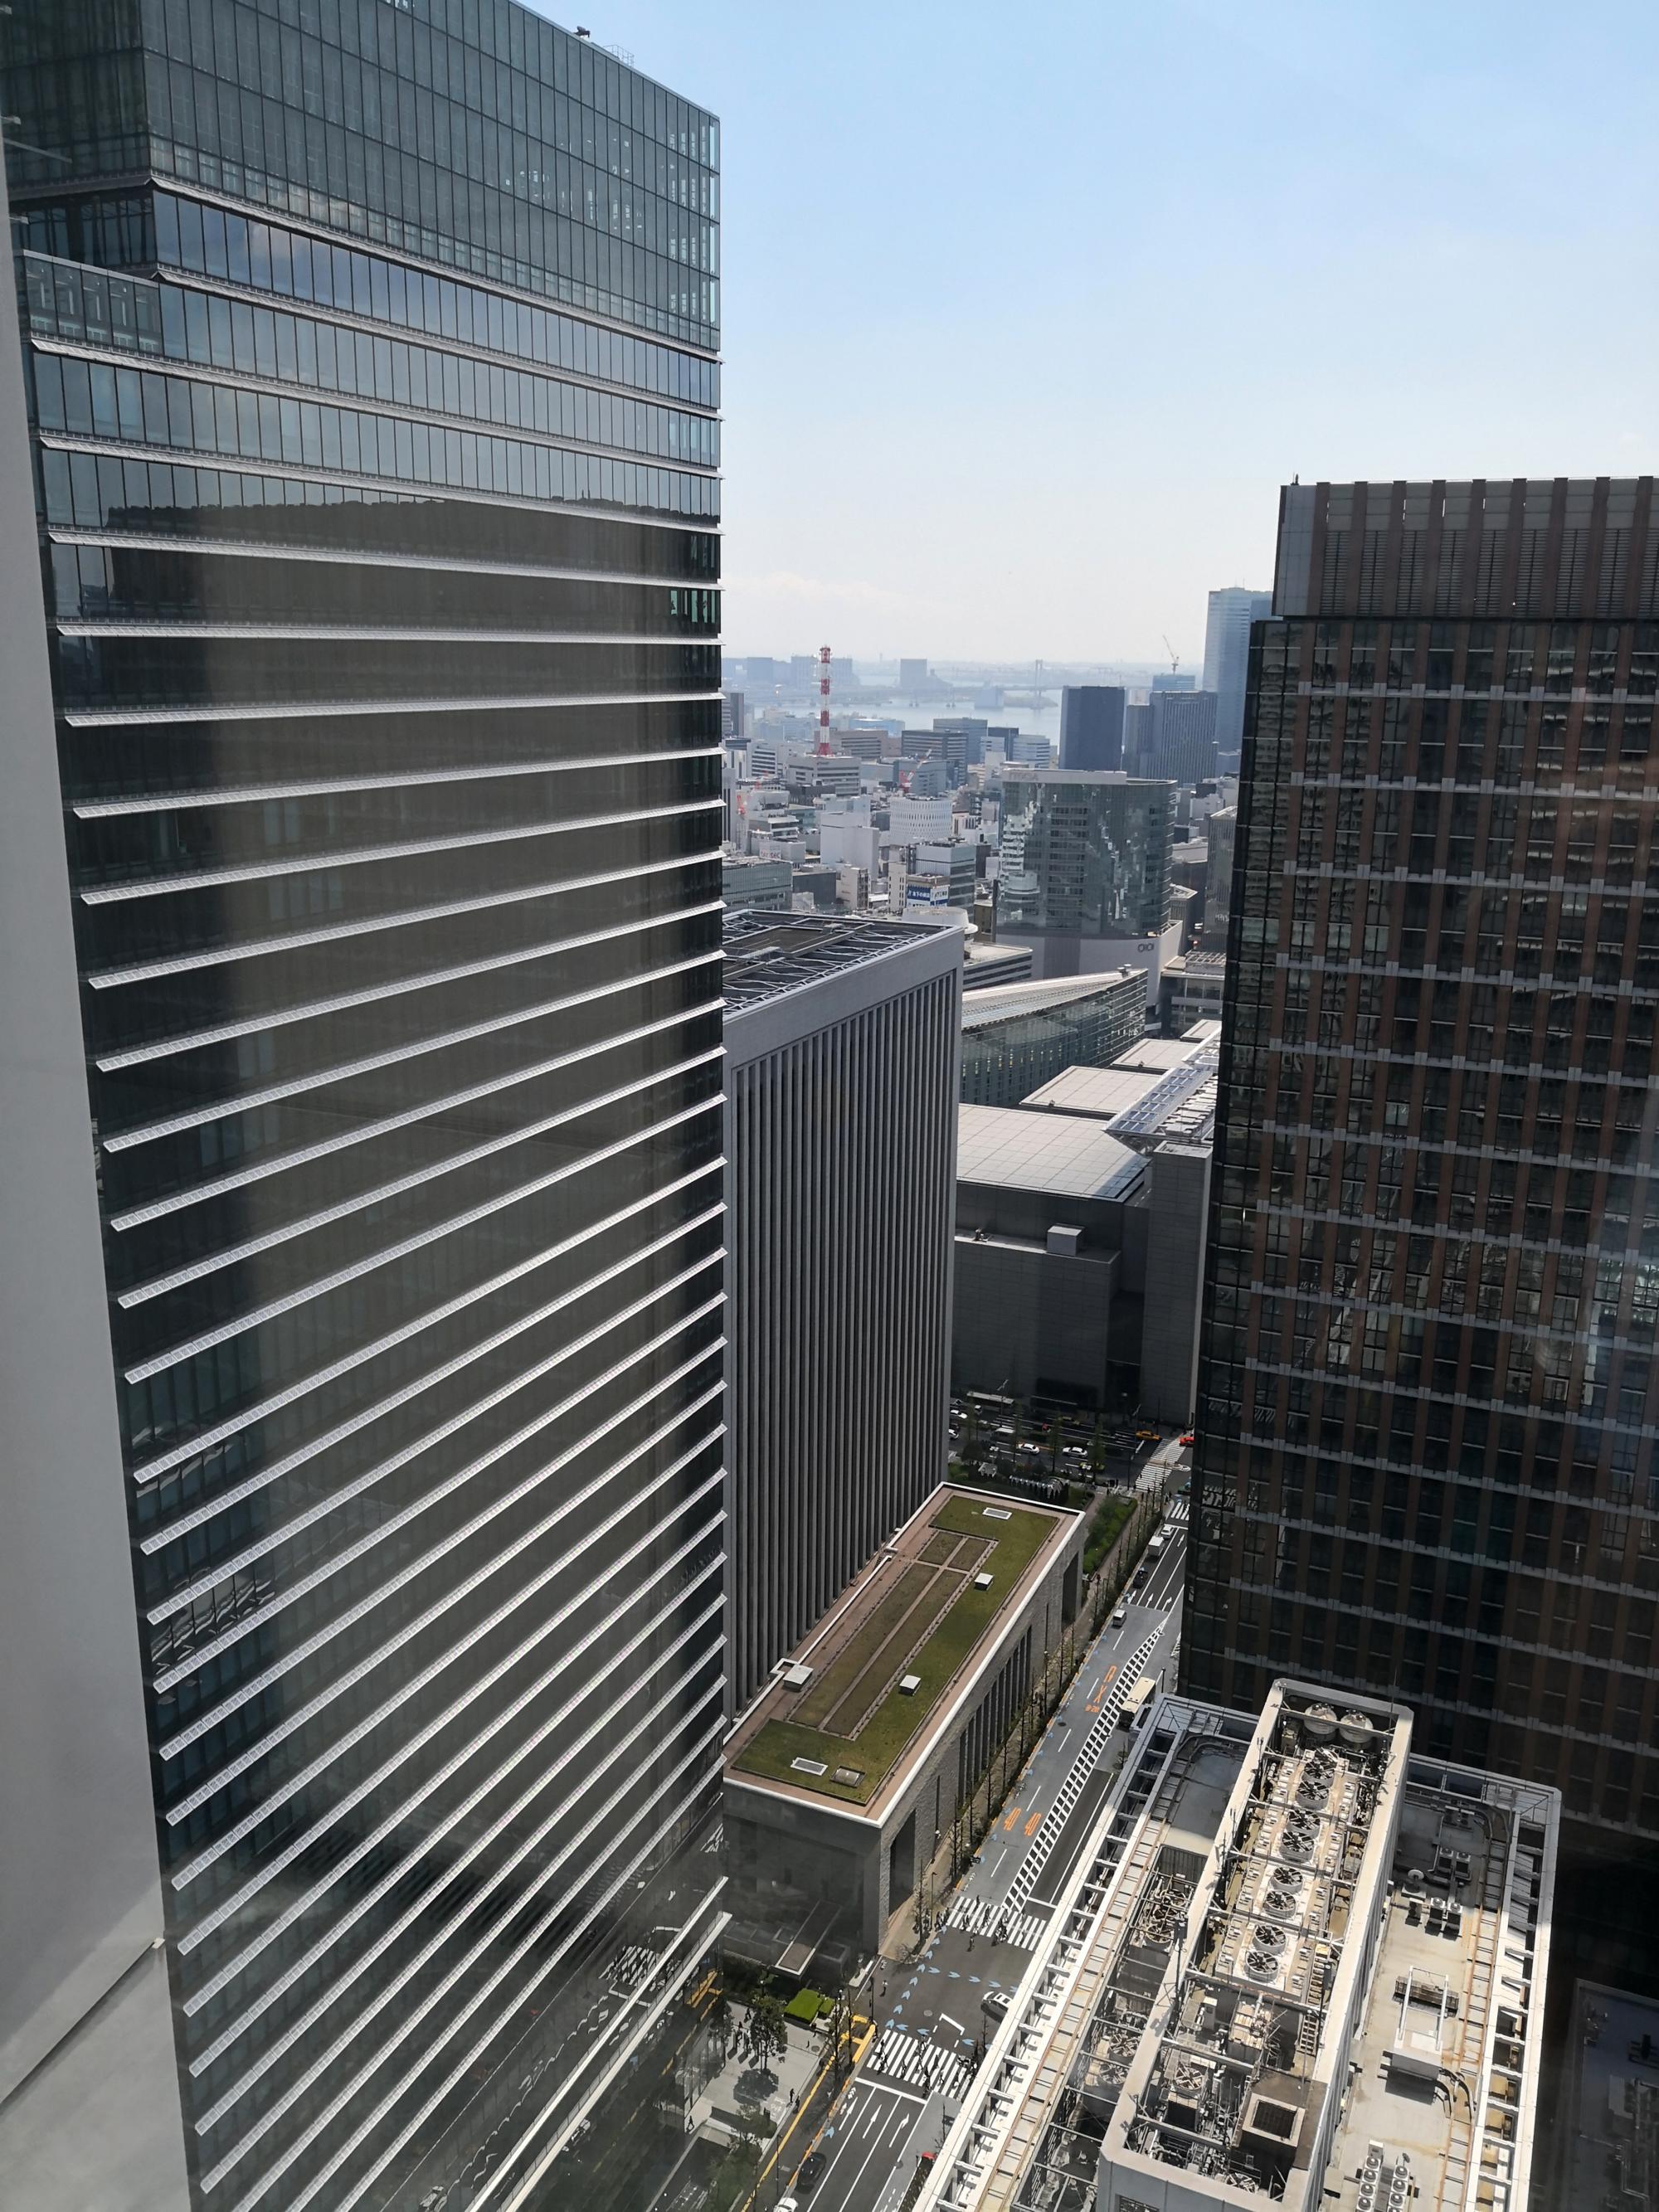 Tokyo (2019) - Marunouchi Bldg View #1